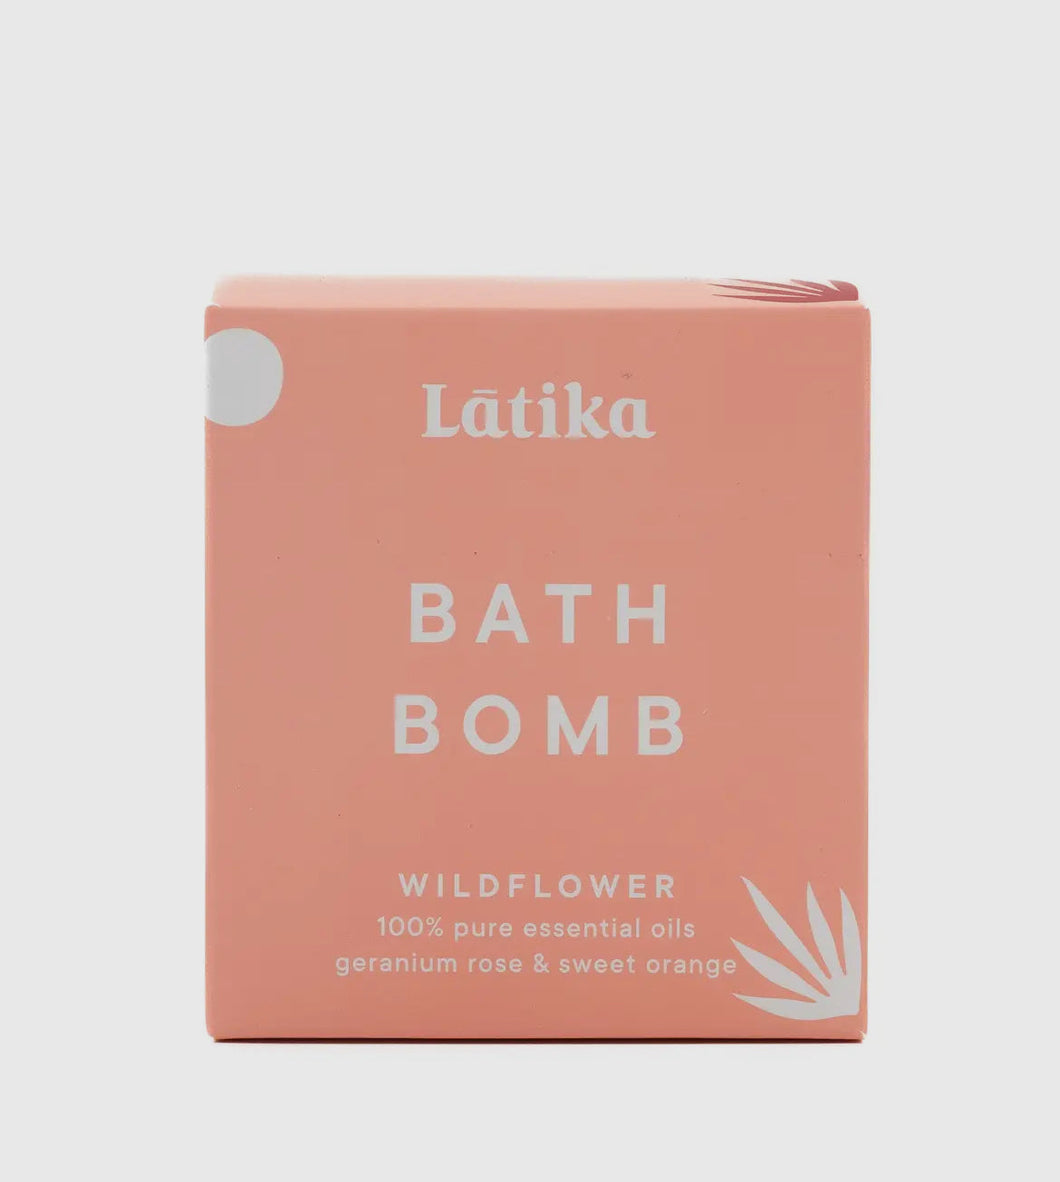 Wildflower Essential Oil Bath Bomb